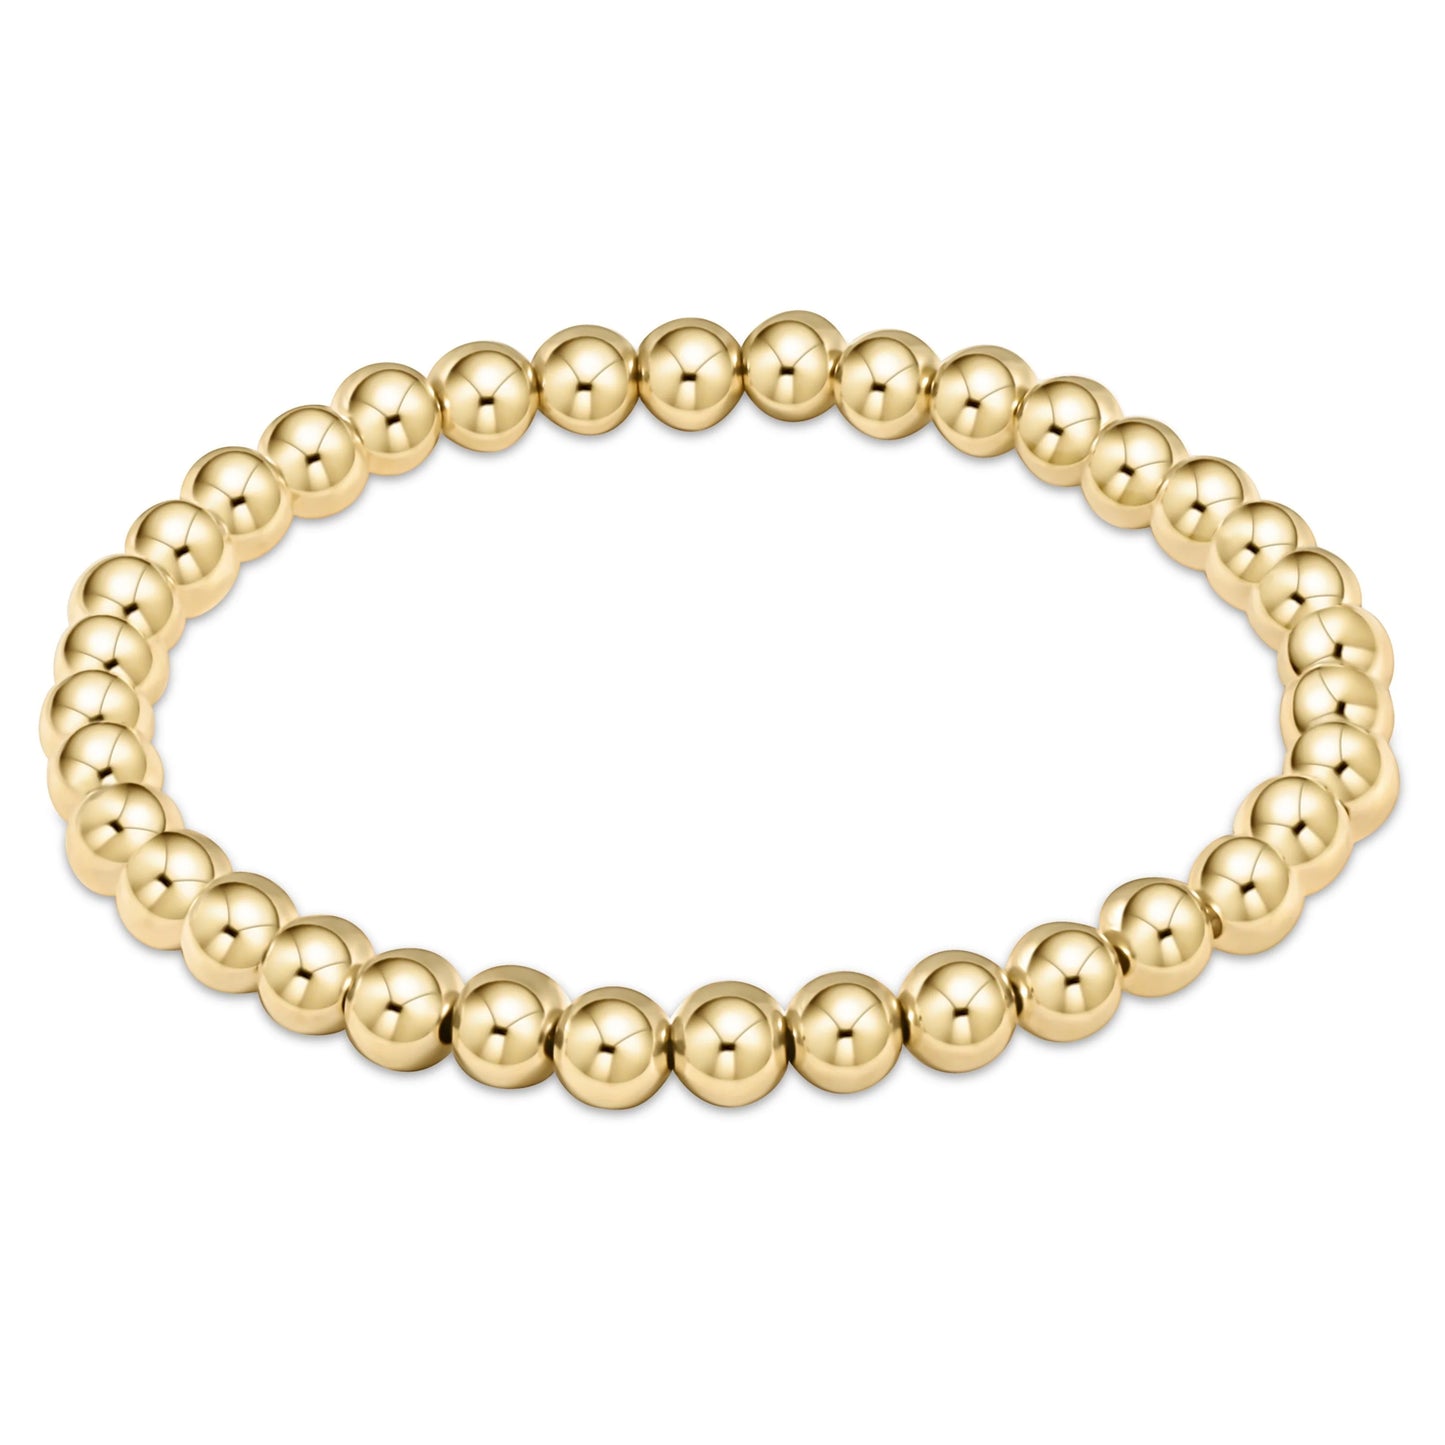 ENewton Extends Gold Classic Bracelet Collection